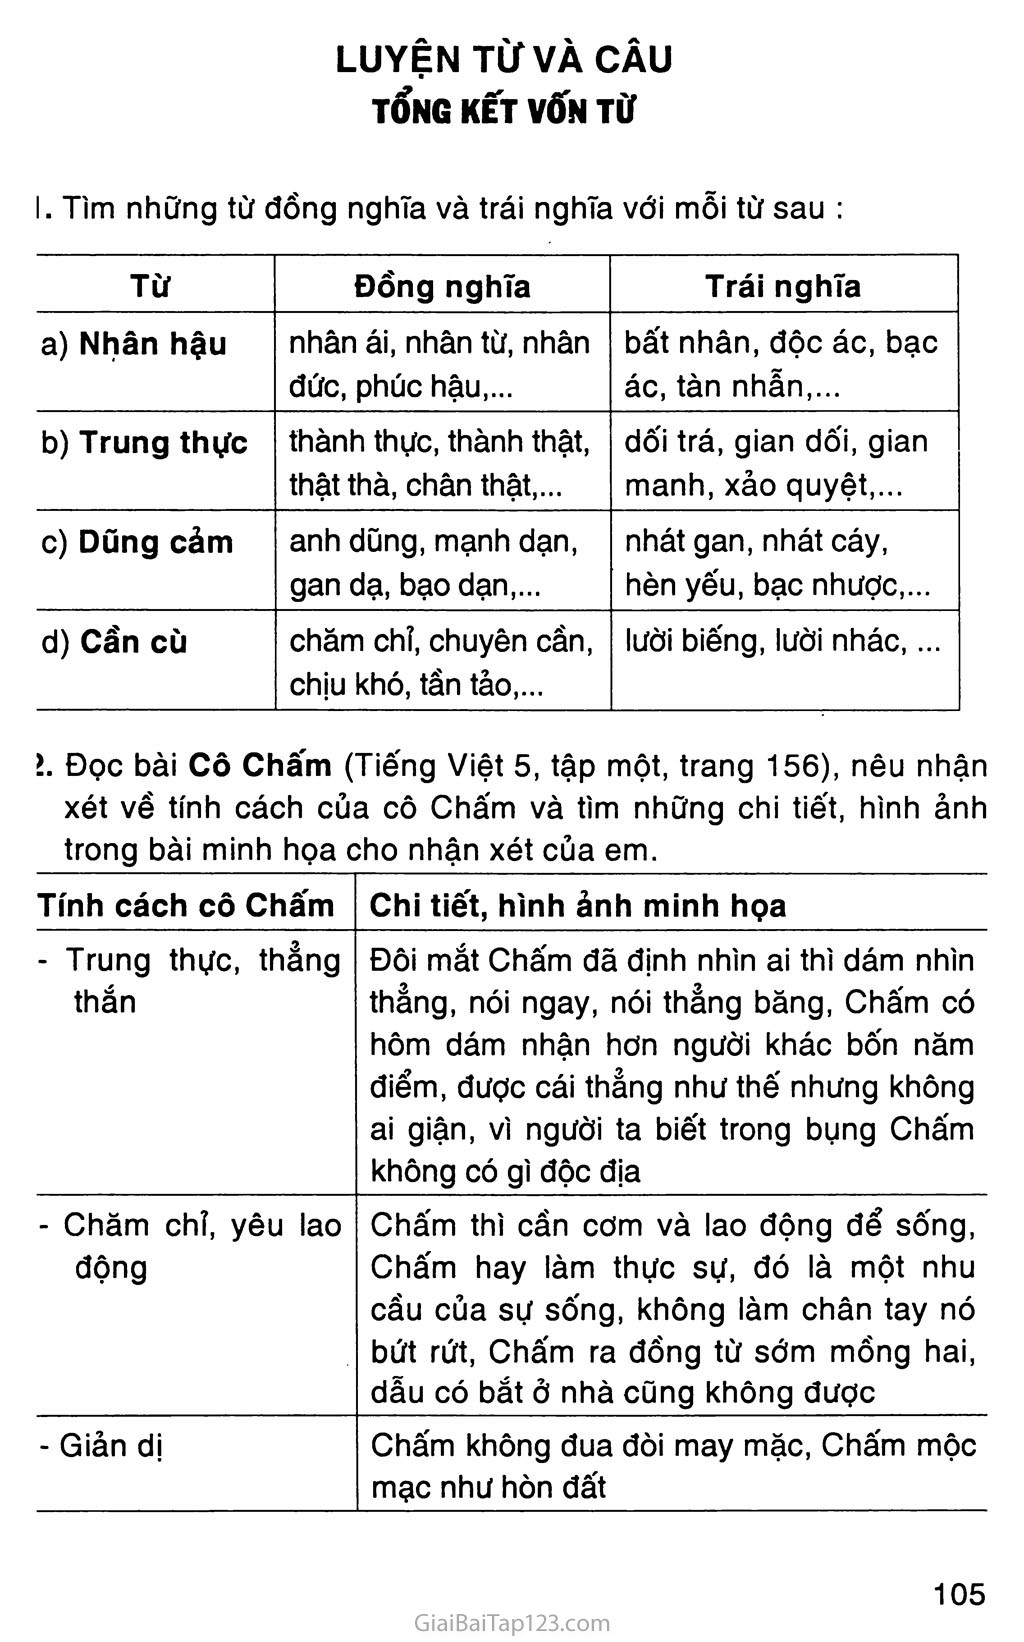 Giải Vở Bài Tập Tiếng Việt Lớp 5 Tập 1 Tuần 16